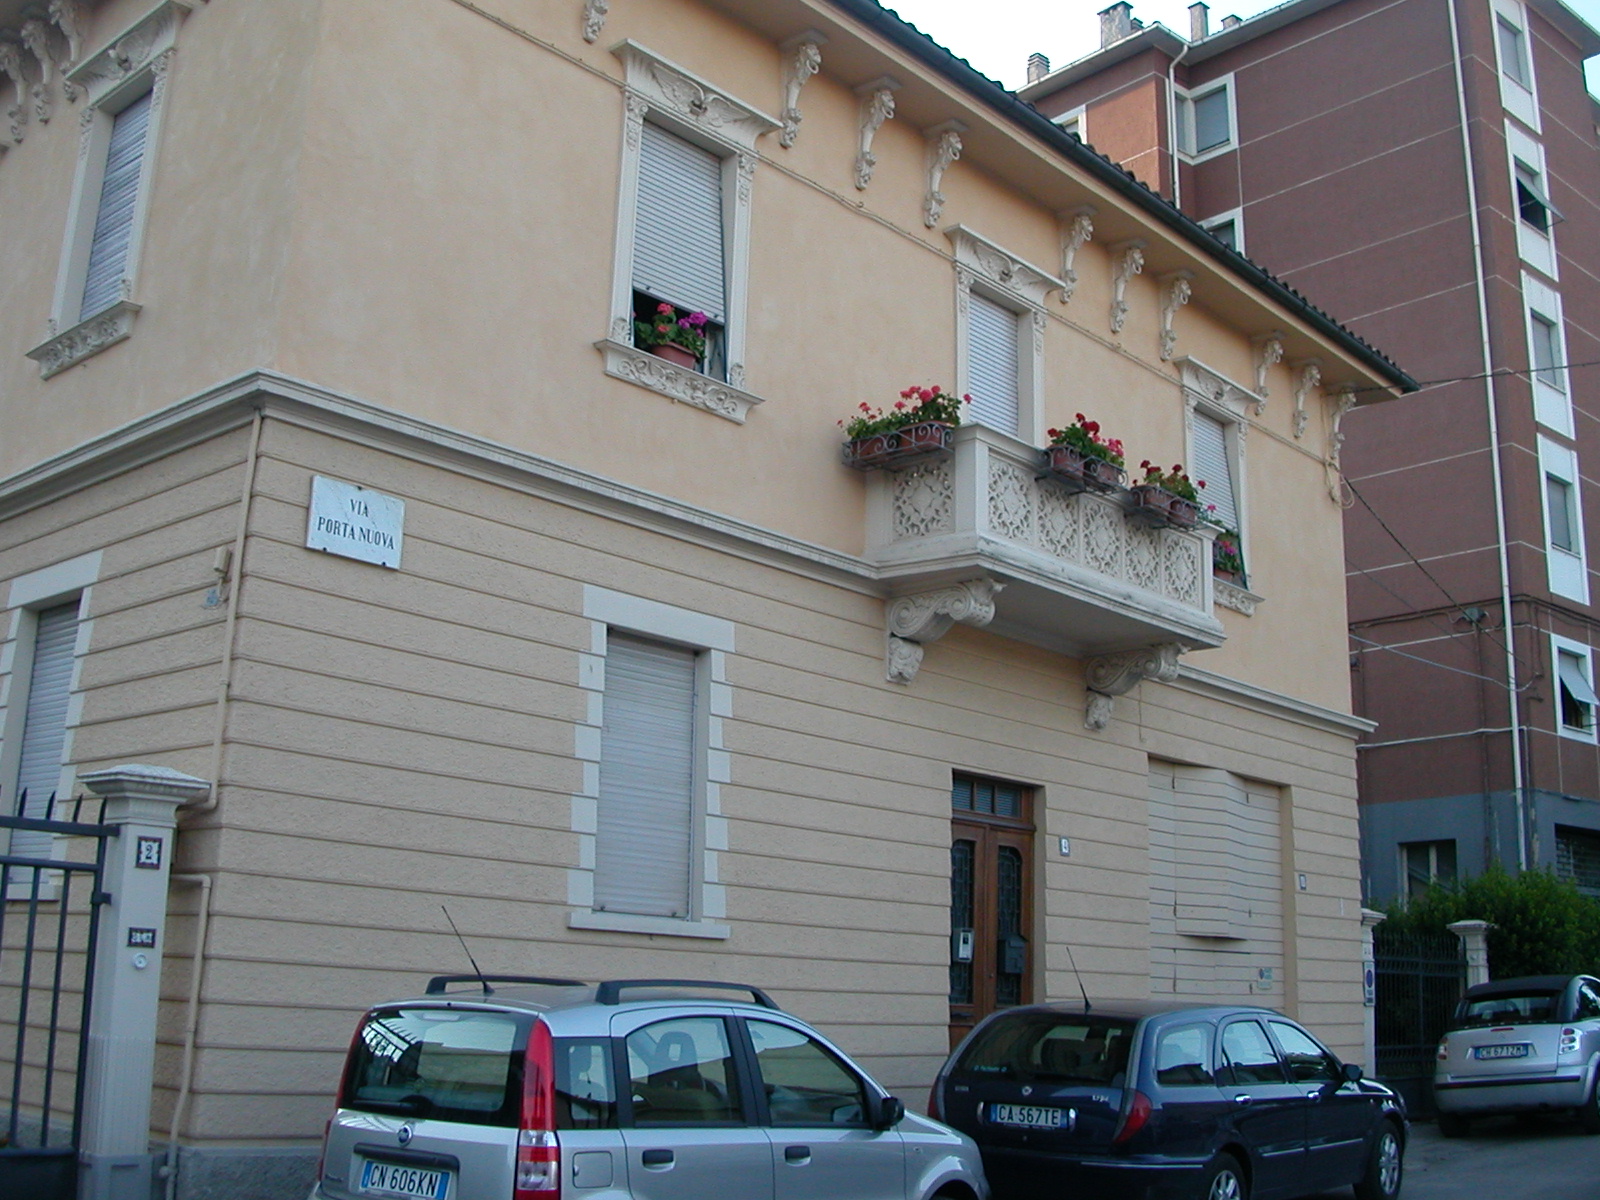 Villetta liberty in Via Porta Nuova, 4 (villetta, signorile) - Fabriano (AN) 